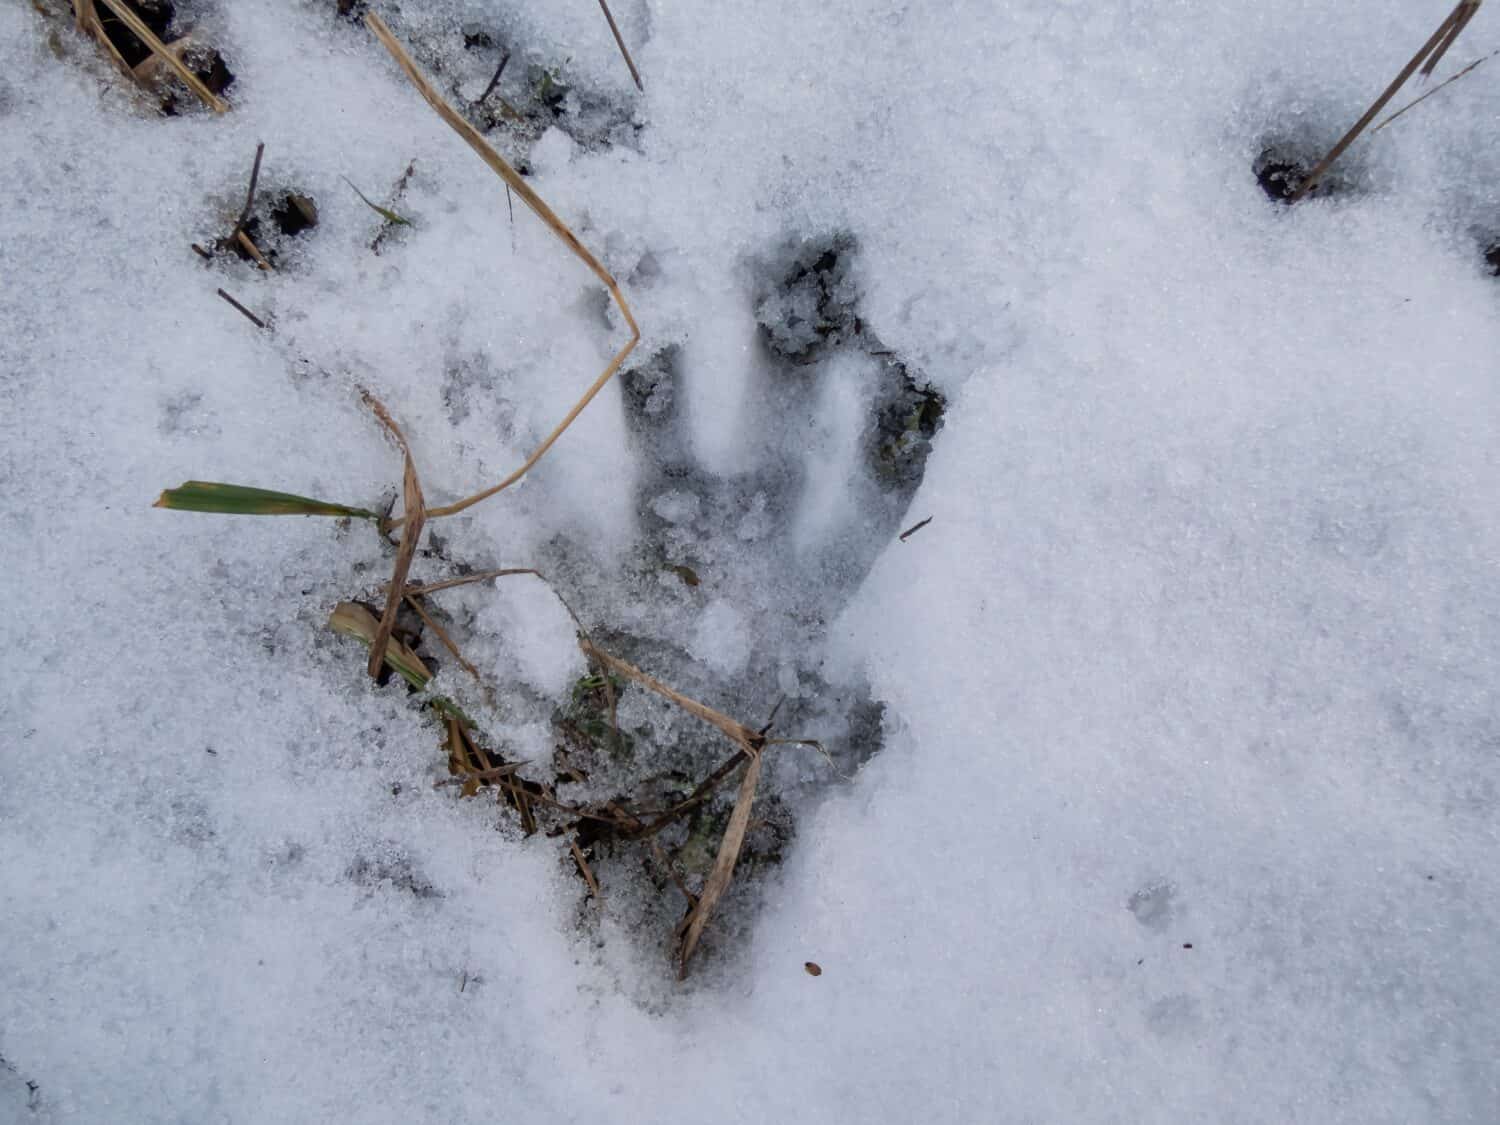 A footprint of the Eurasian beaver or European beaver (Castor fiber) walking in fresh snow